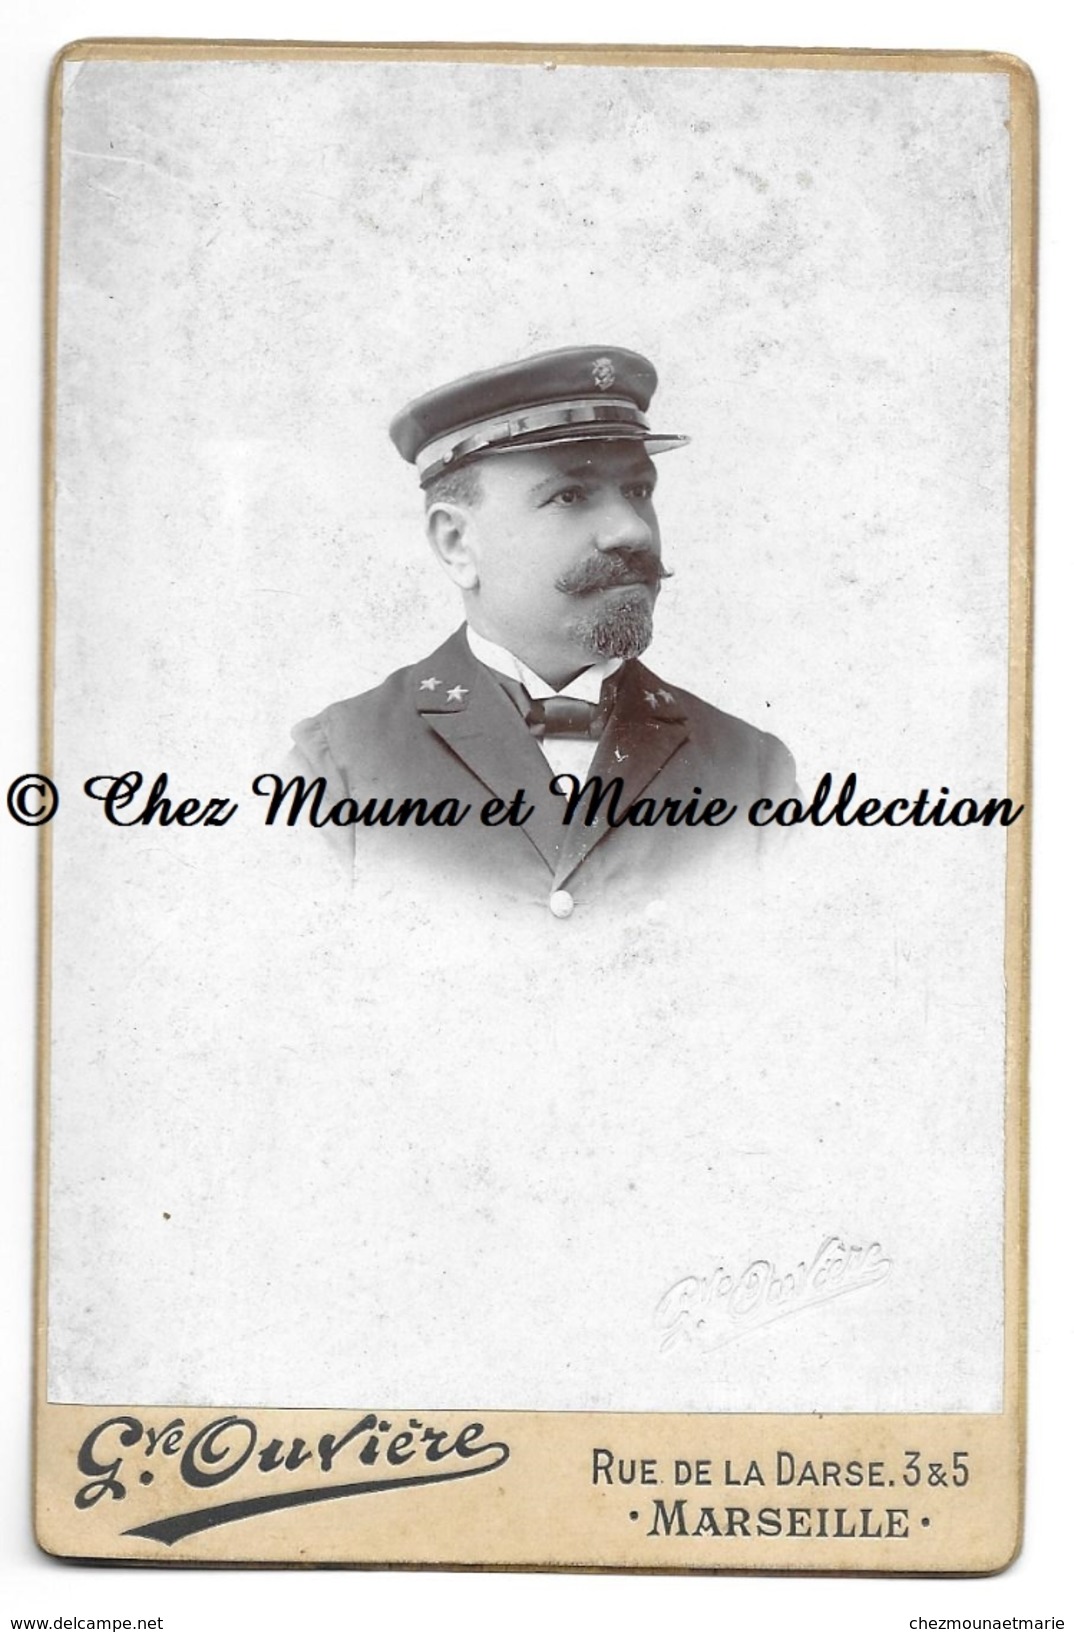 MARSEILLE 1900 - COMMANDANT DE L ORENOQUE PAQUEBOT - A SON LIEUTENANT - SIGNATURE - OUVIERE CDV PHOTO 16.5 X 10.5 CM - Personnes Identifiées